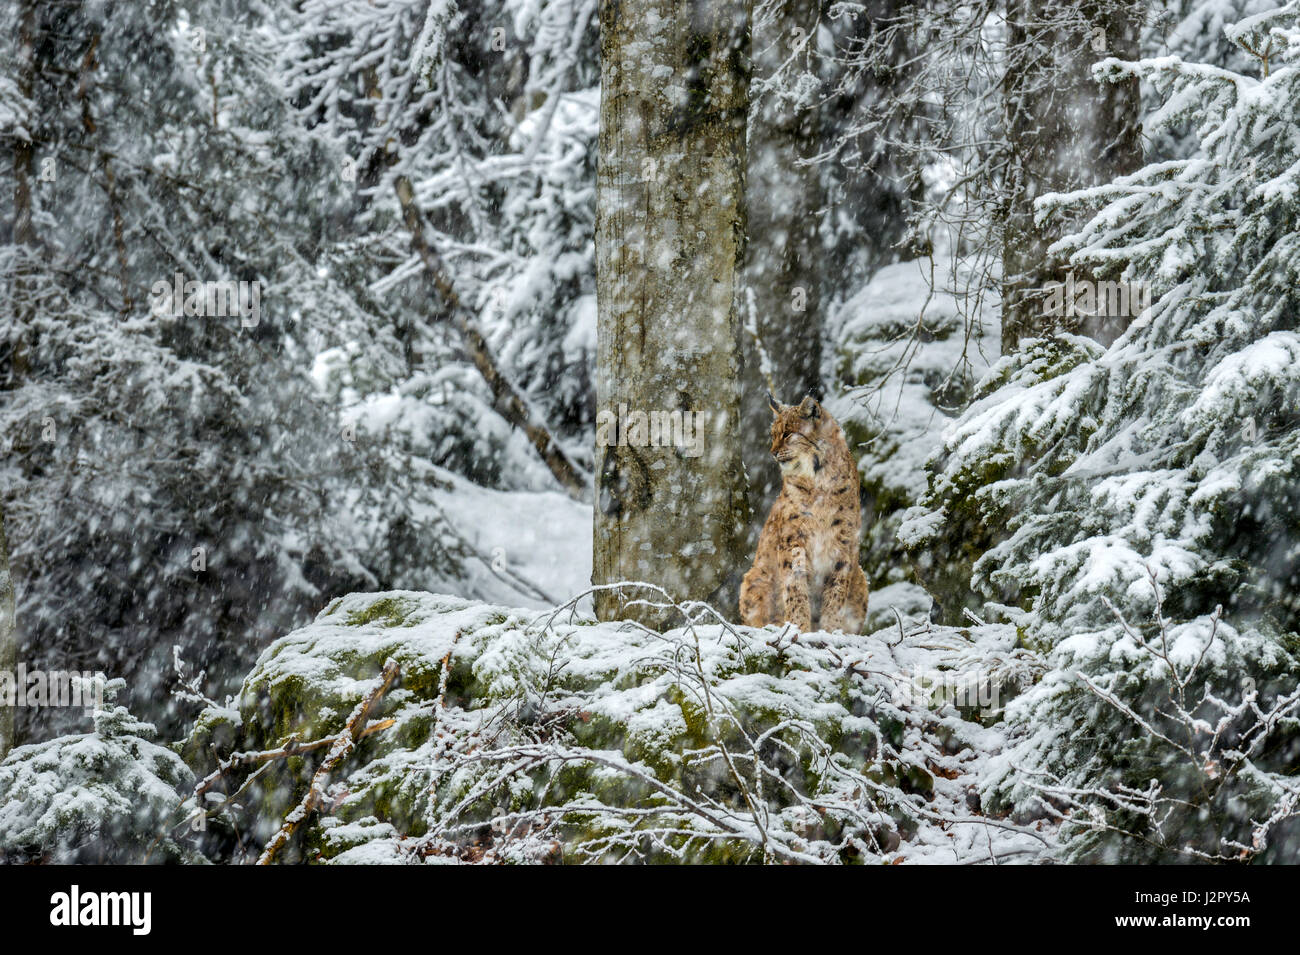 Hermoso el lince eurásico (Lynx lynx) representada asentado sobre un afloramiento rocoso, encuestar a sus alrededores cubiertos de nieve en un bosque remoto Configuración de invierno. Foto de stock